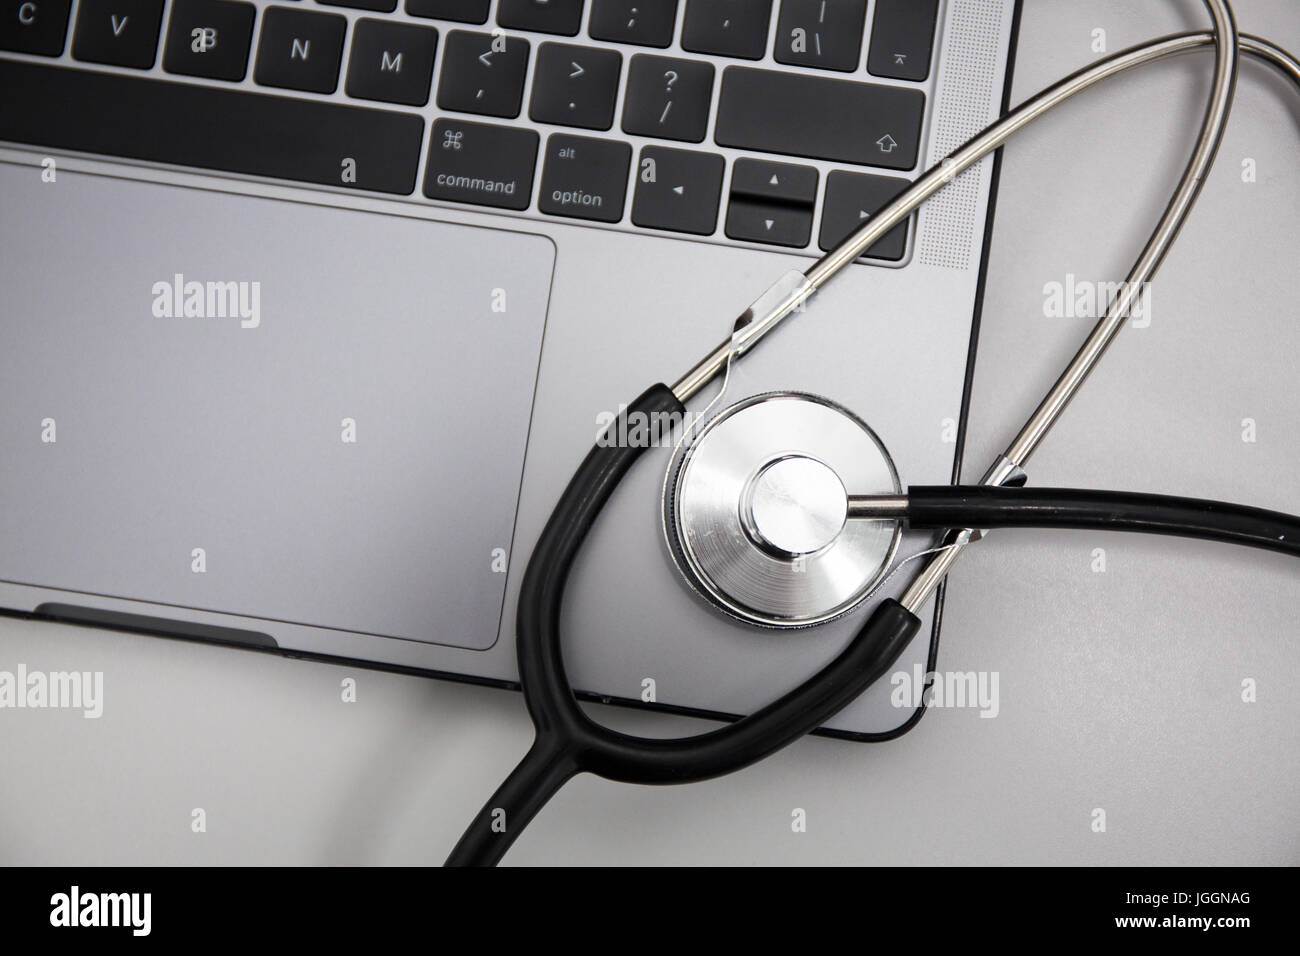 Laptop and stethoscope on flat grey background, Horizontal. Stock Photo